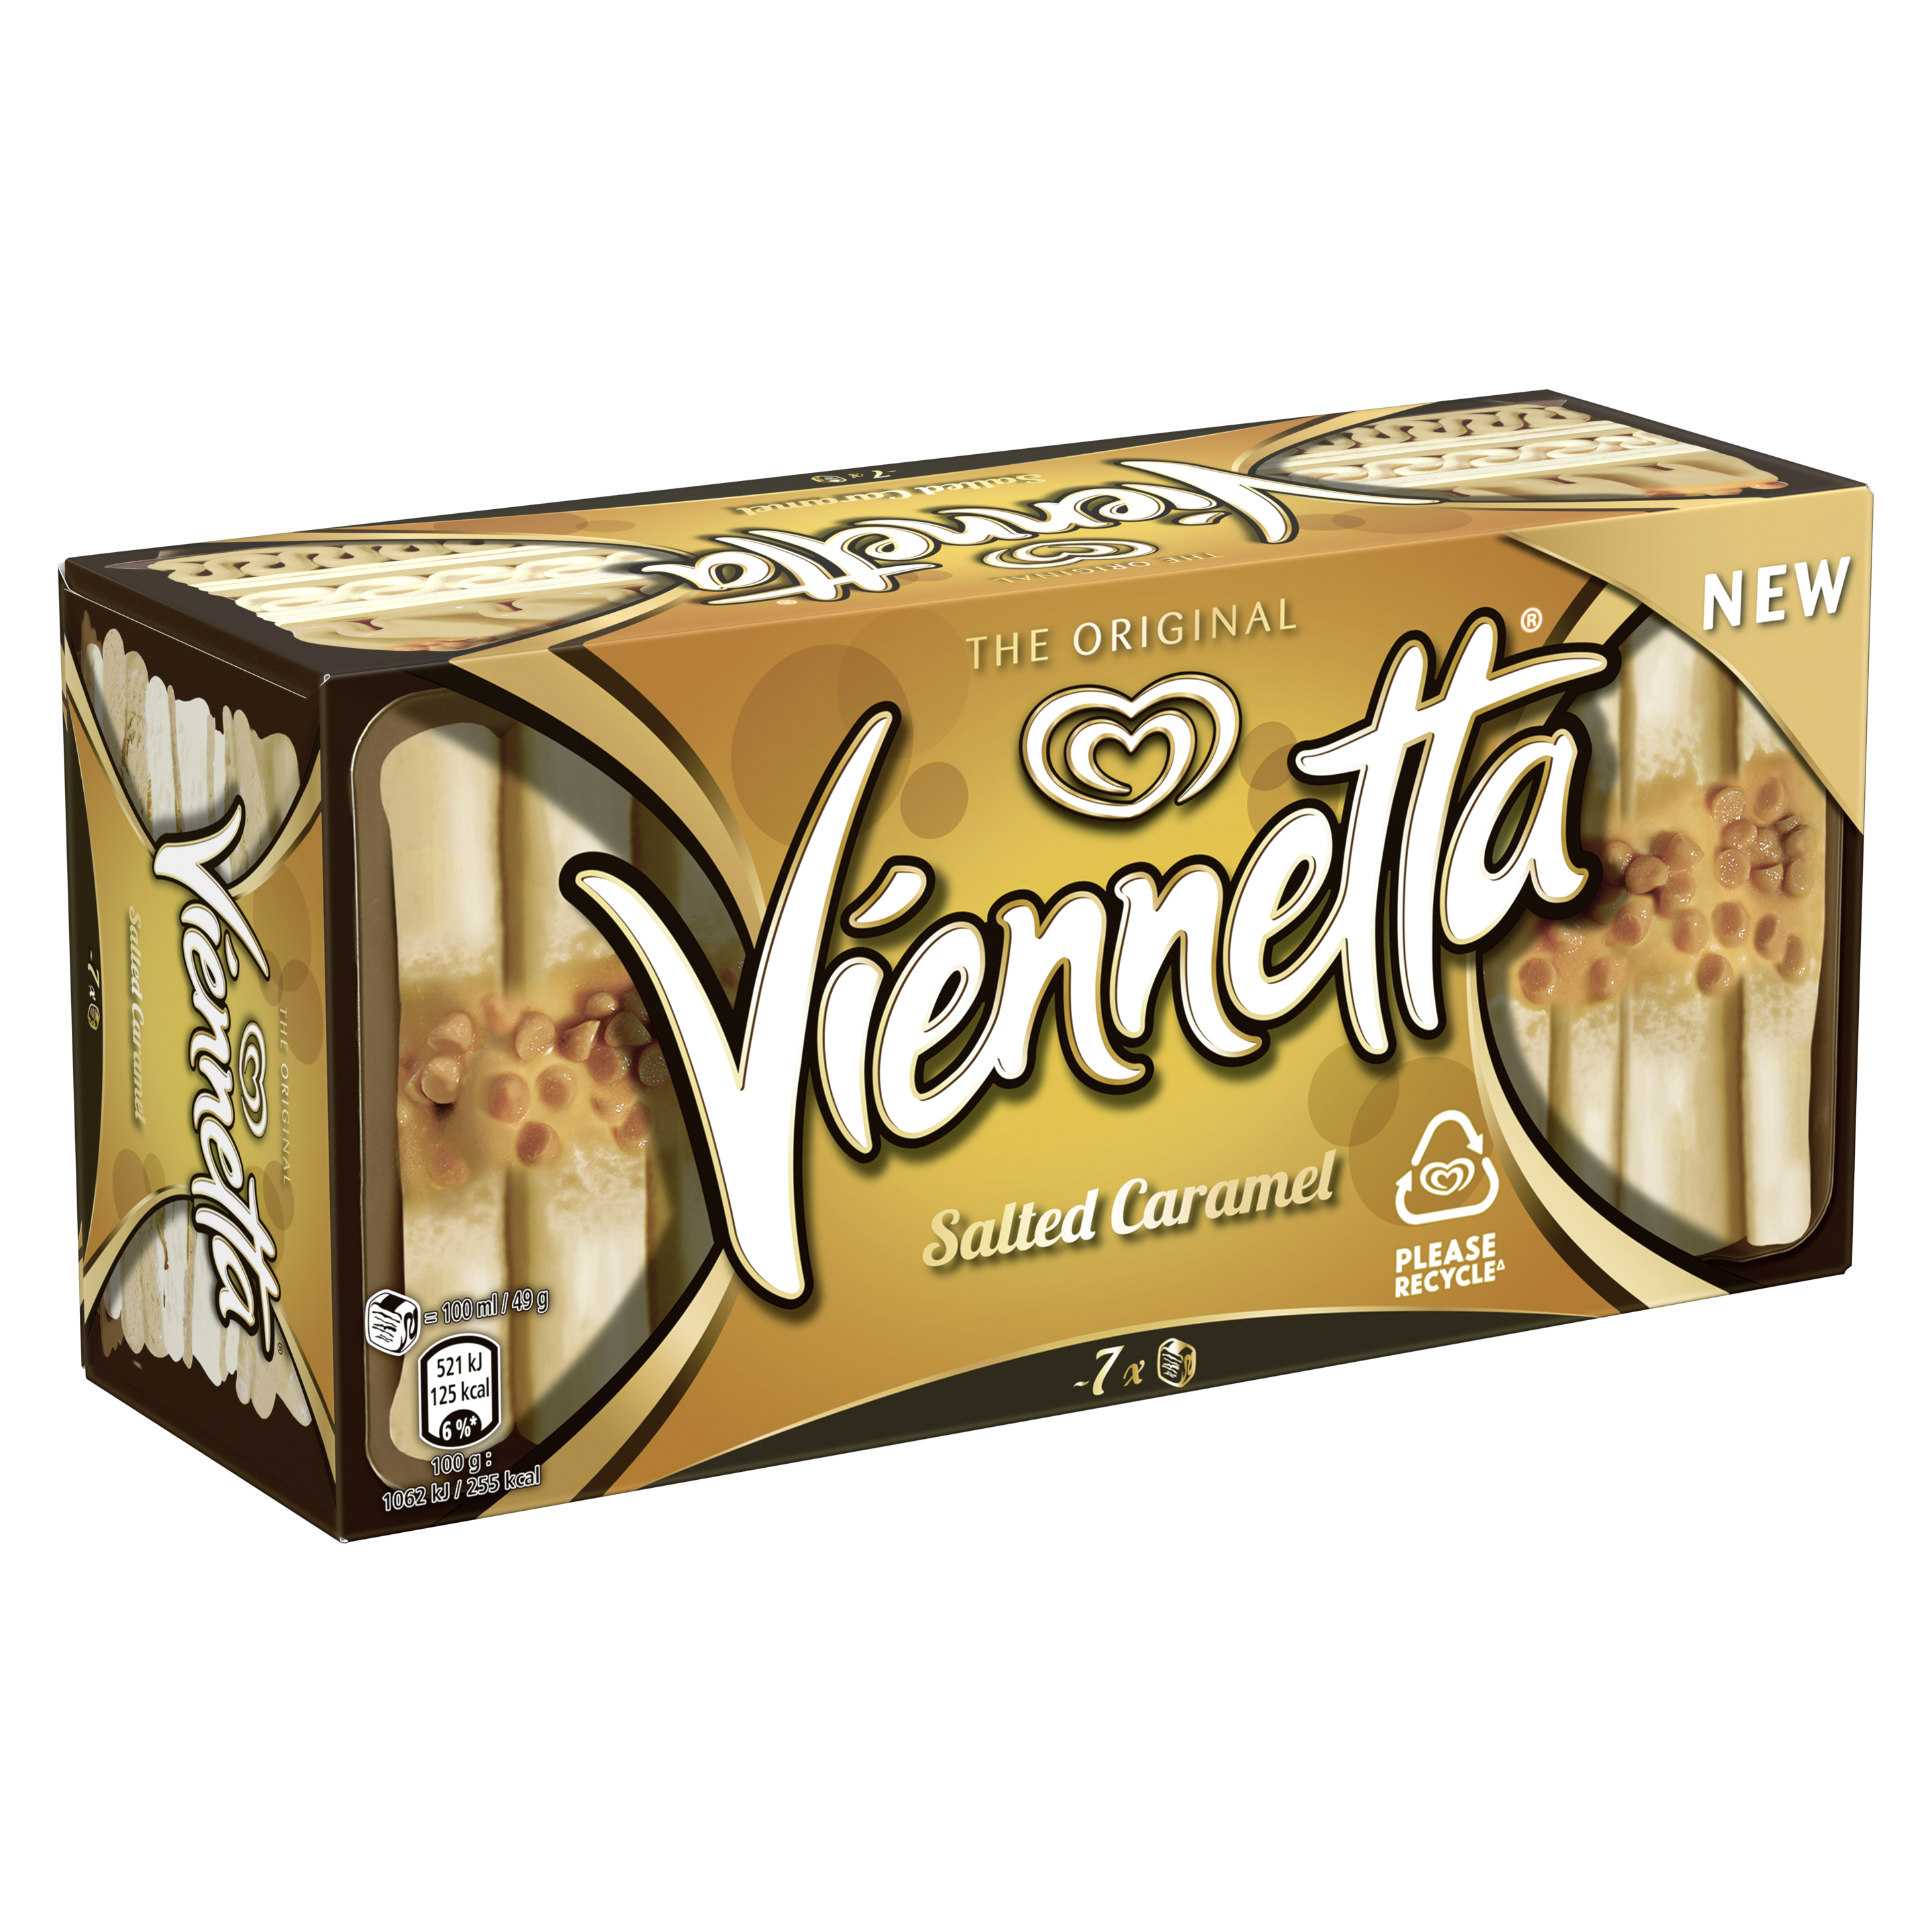 Viennetta Salted Caramel